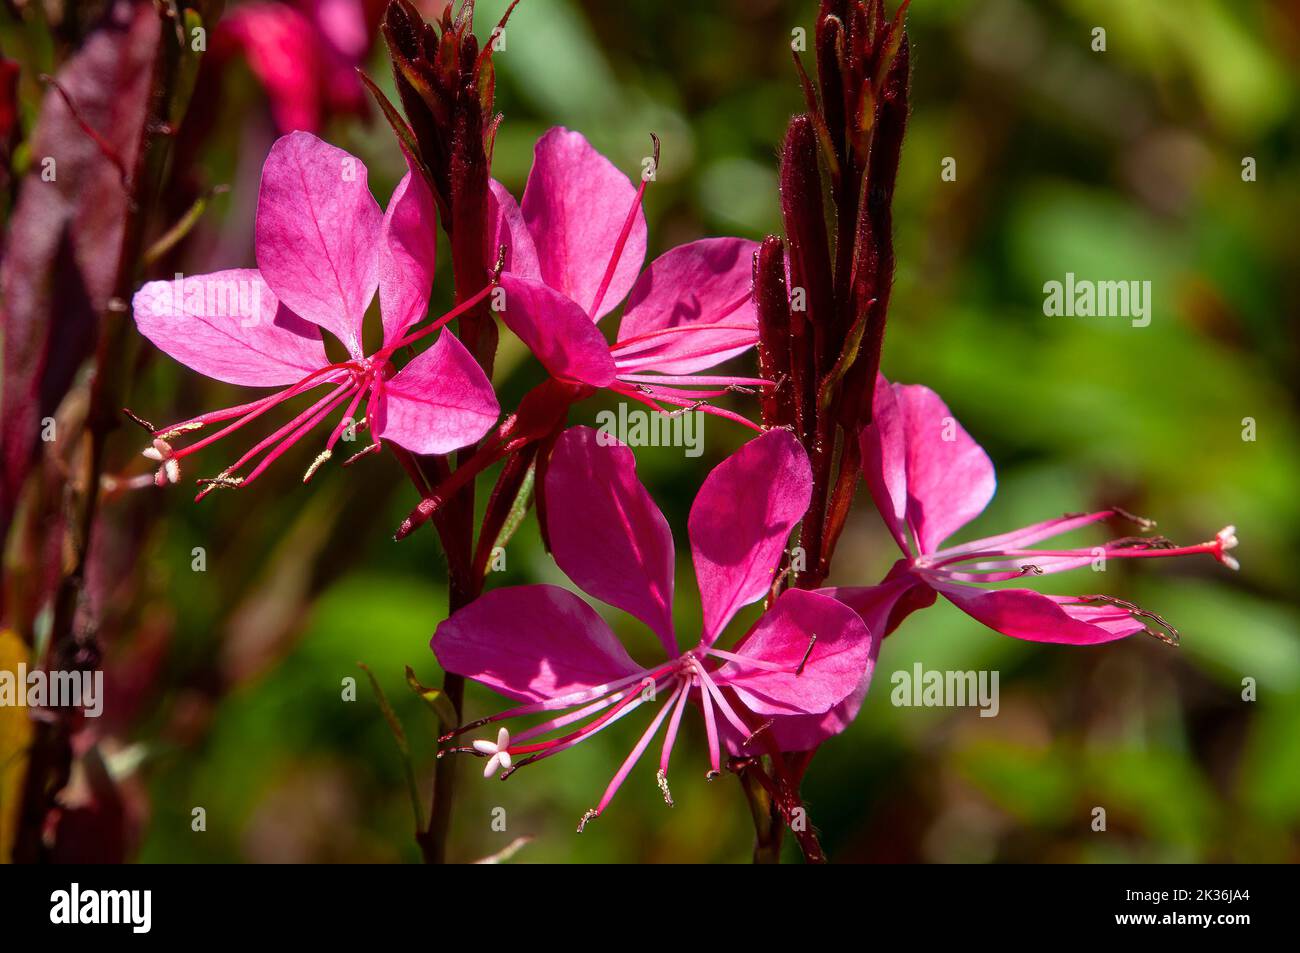 Sydney Australia, fiori rosa brillante di una pianta di enotera lindheimeri o di beeblossom di lindheimer Foto Stock